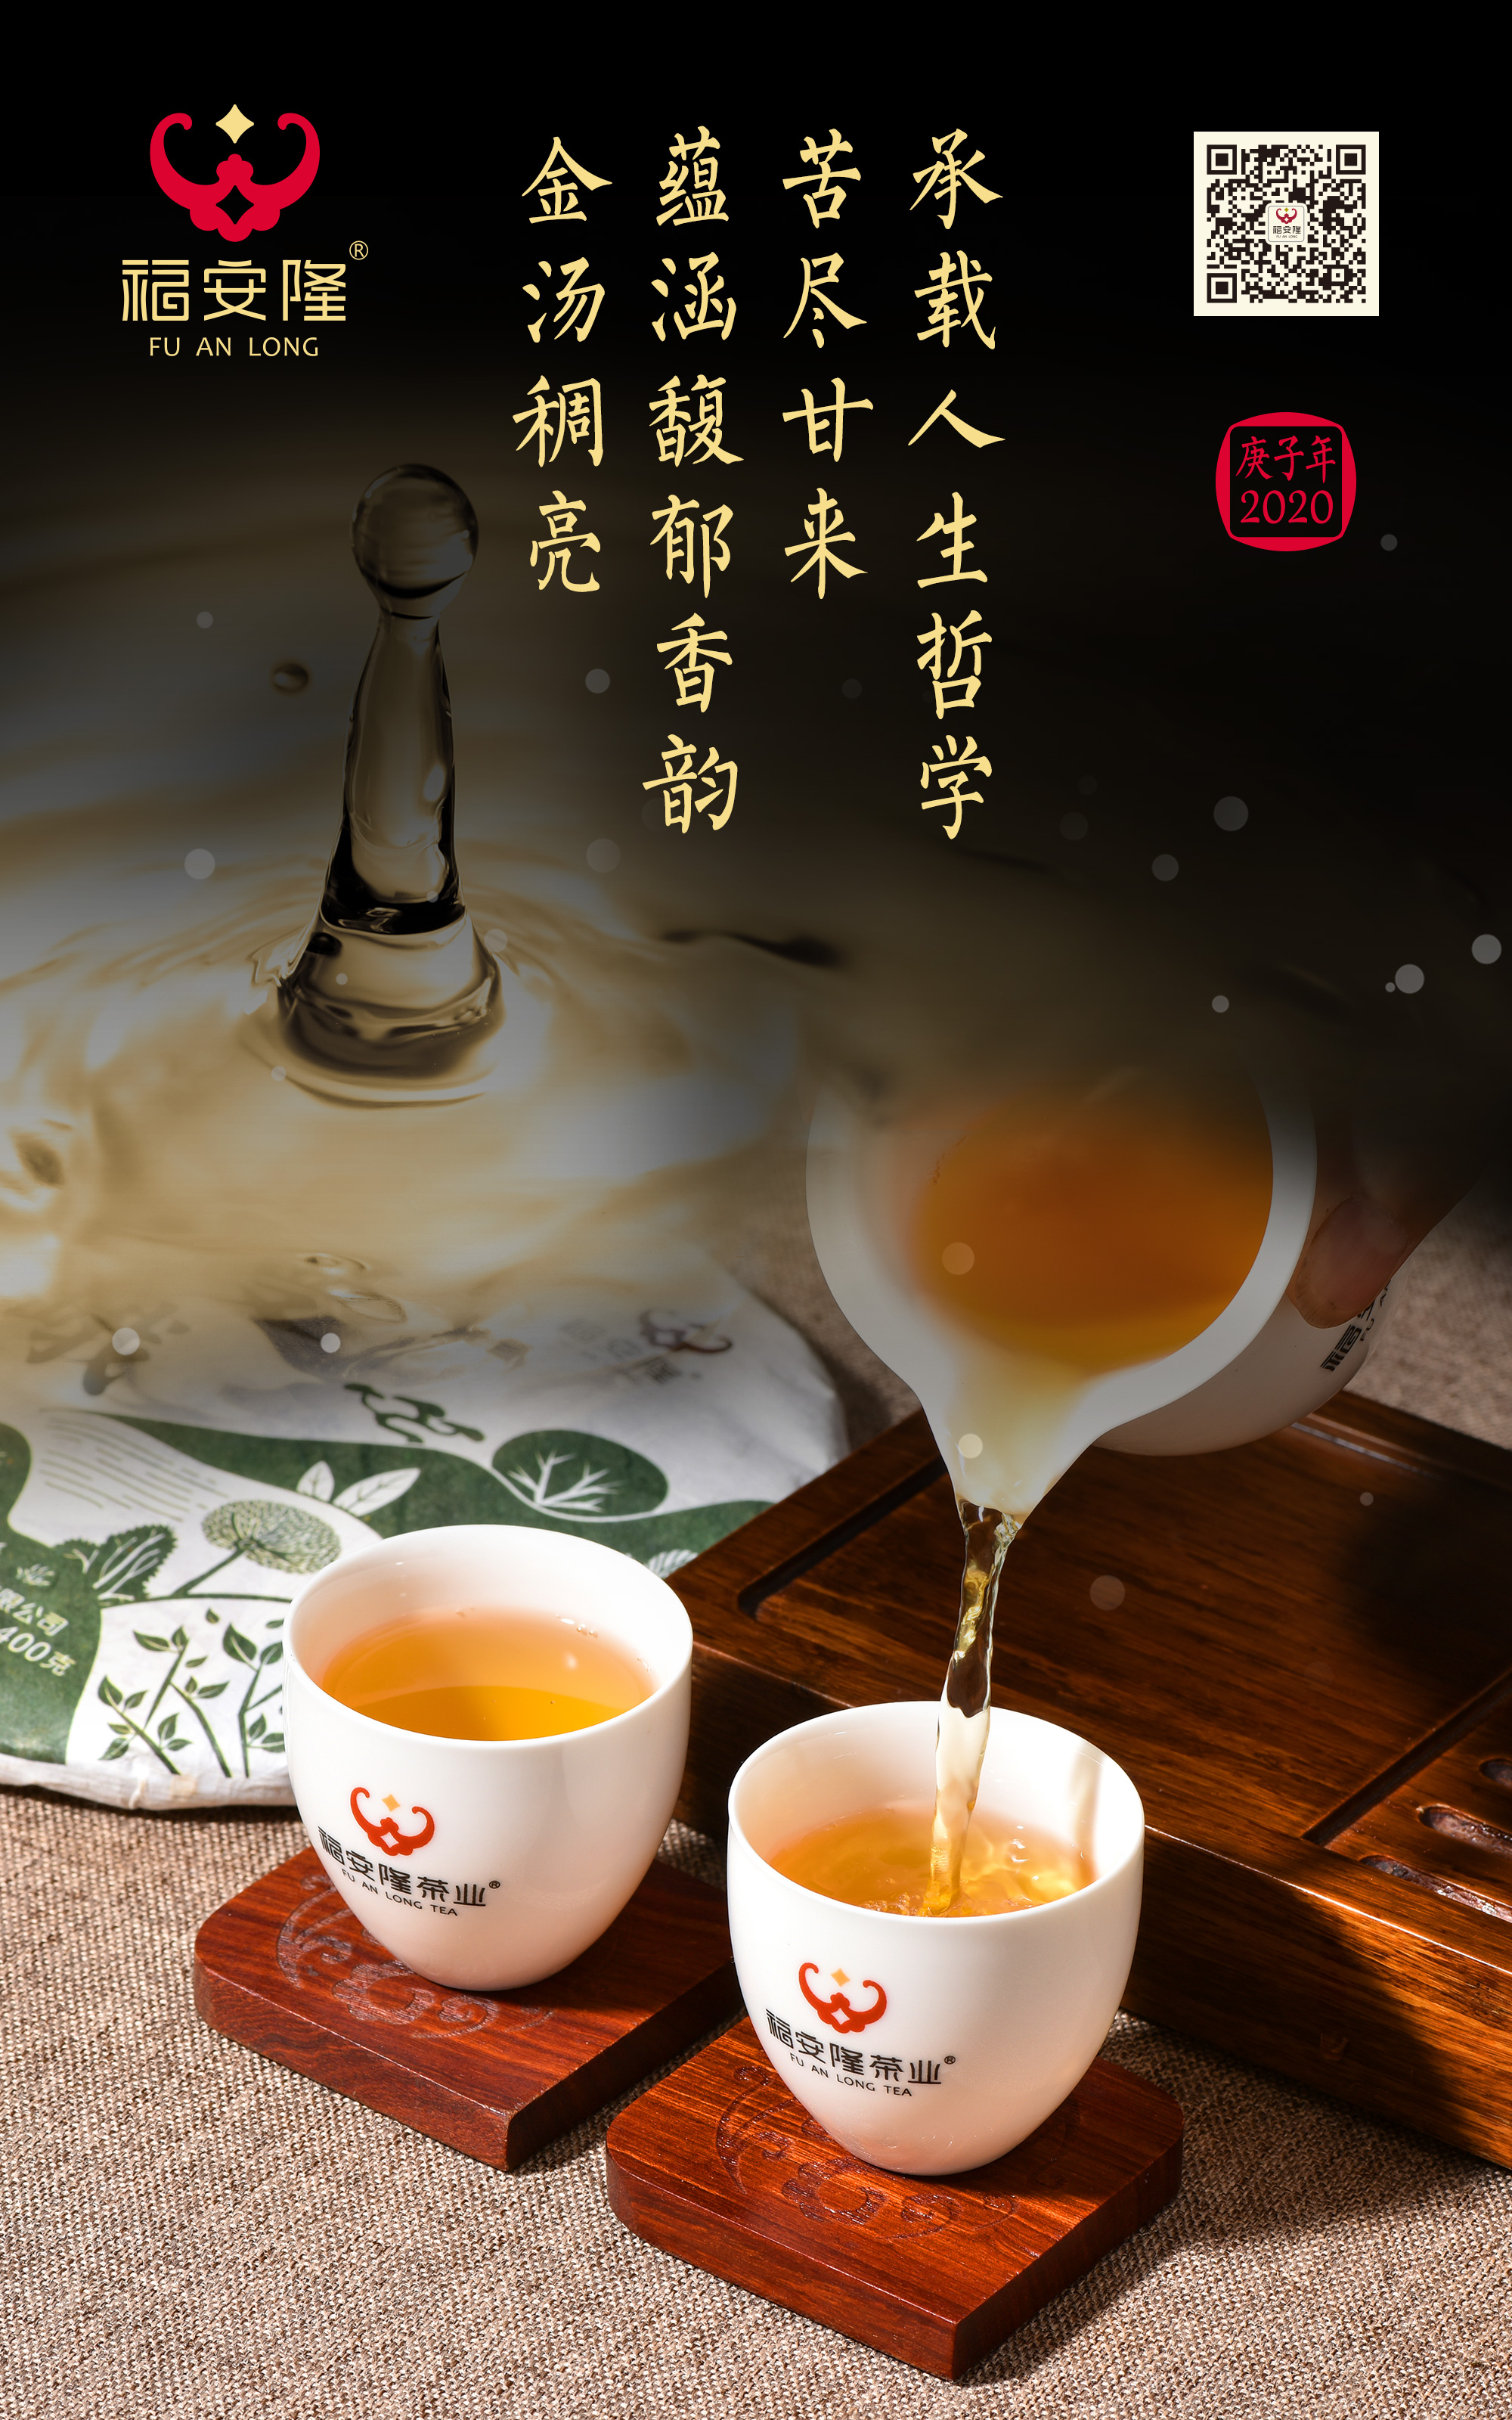 福安隆濮人的千年时光，用这杯茶细细品尝！配图